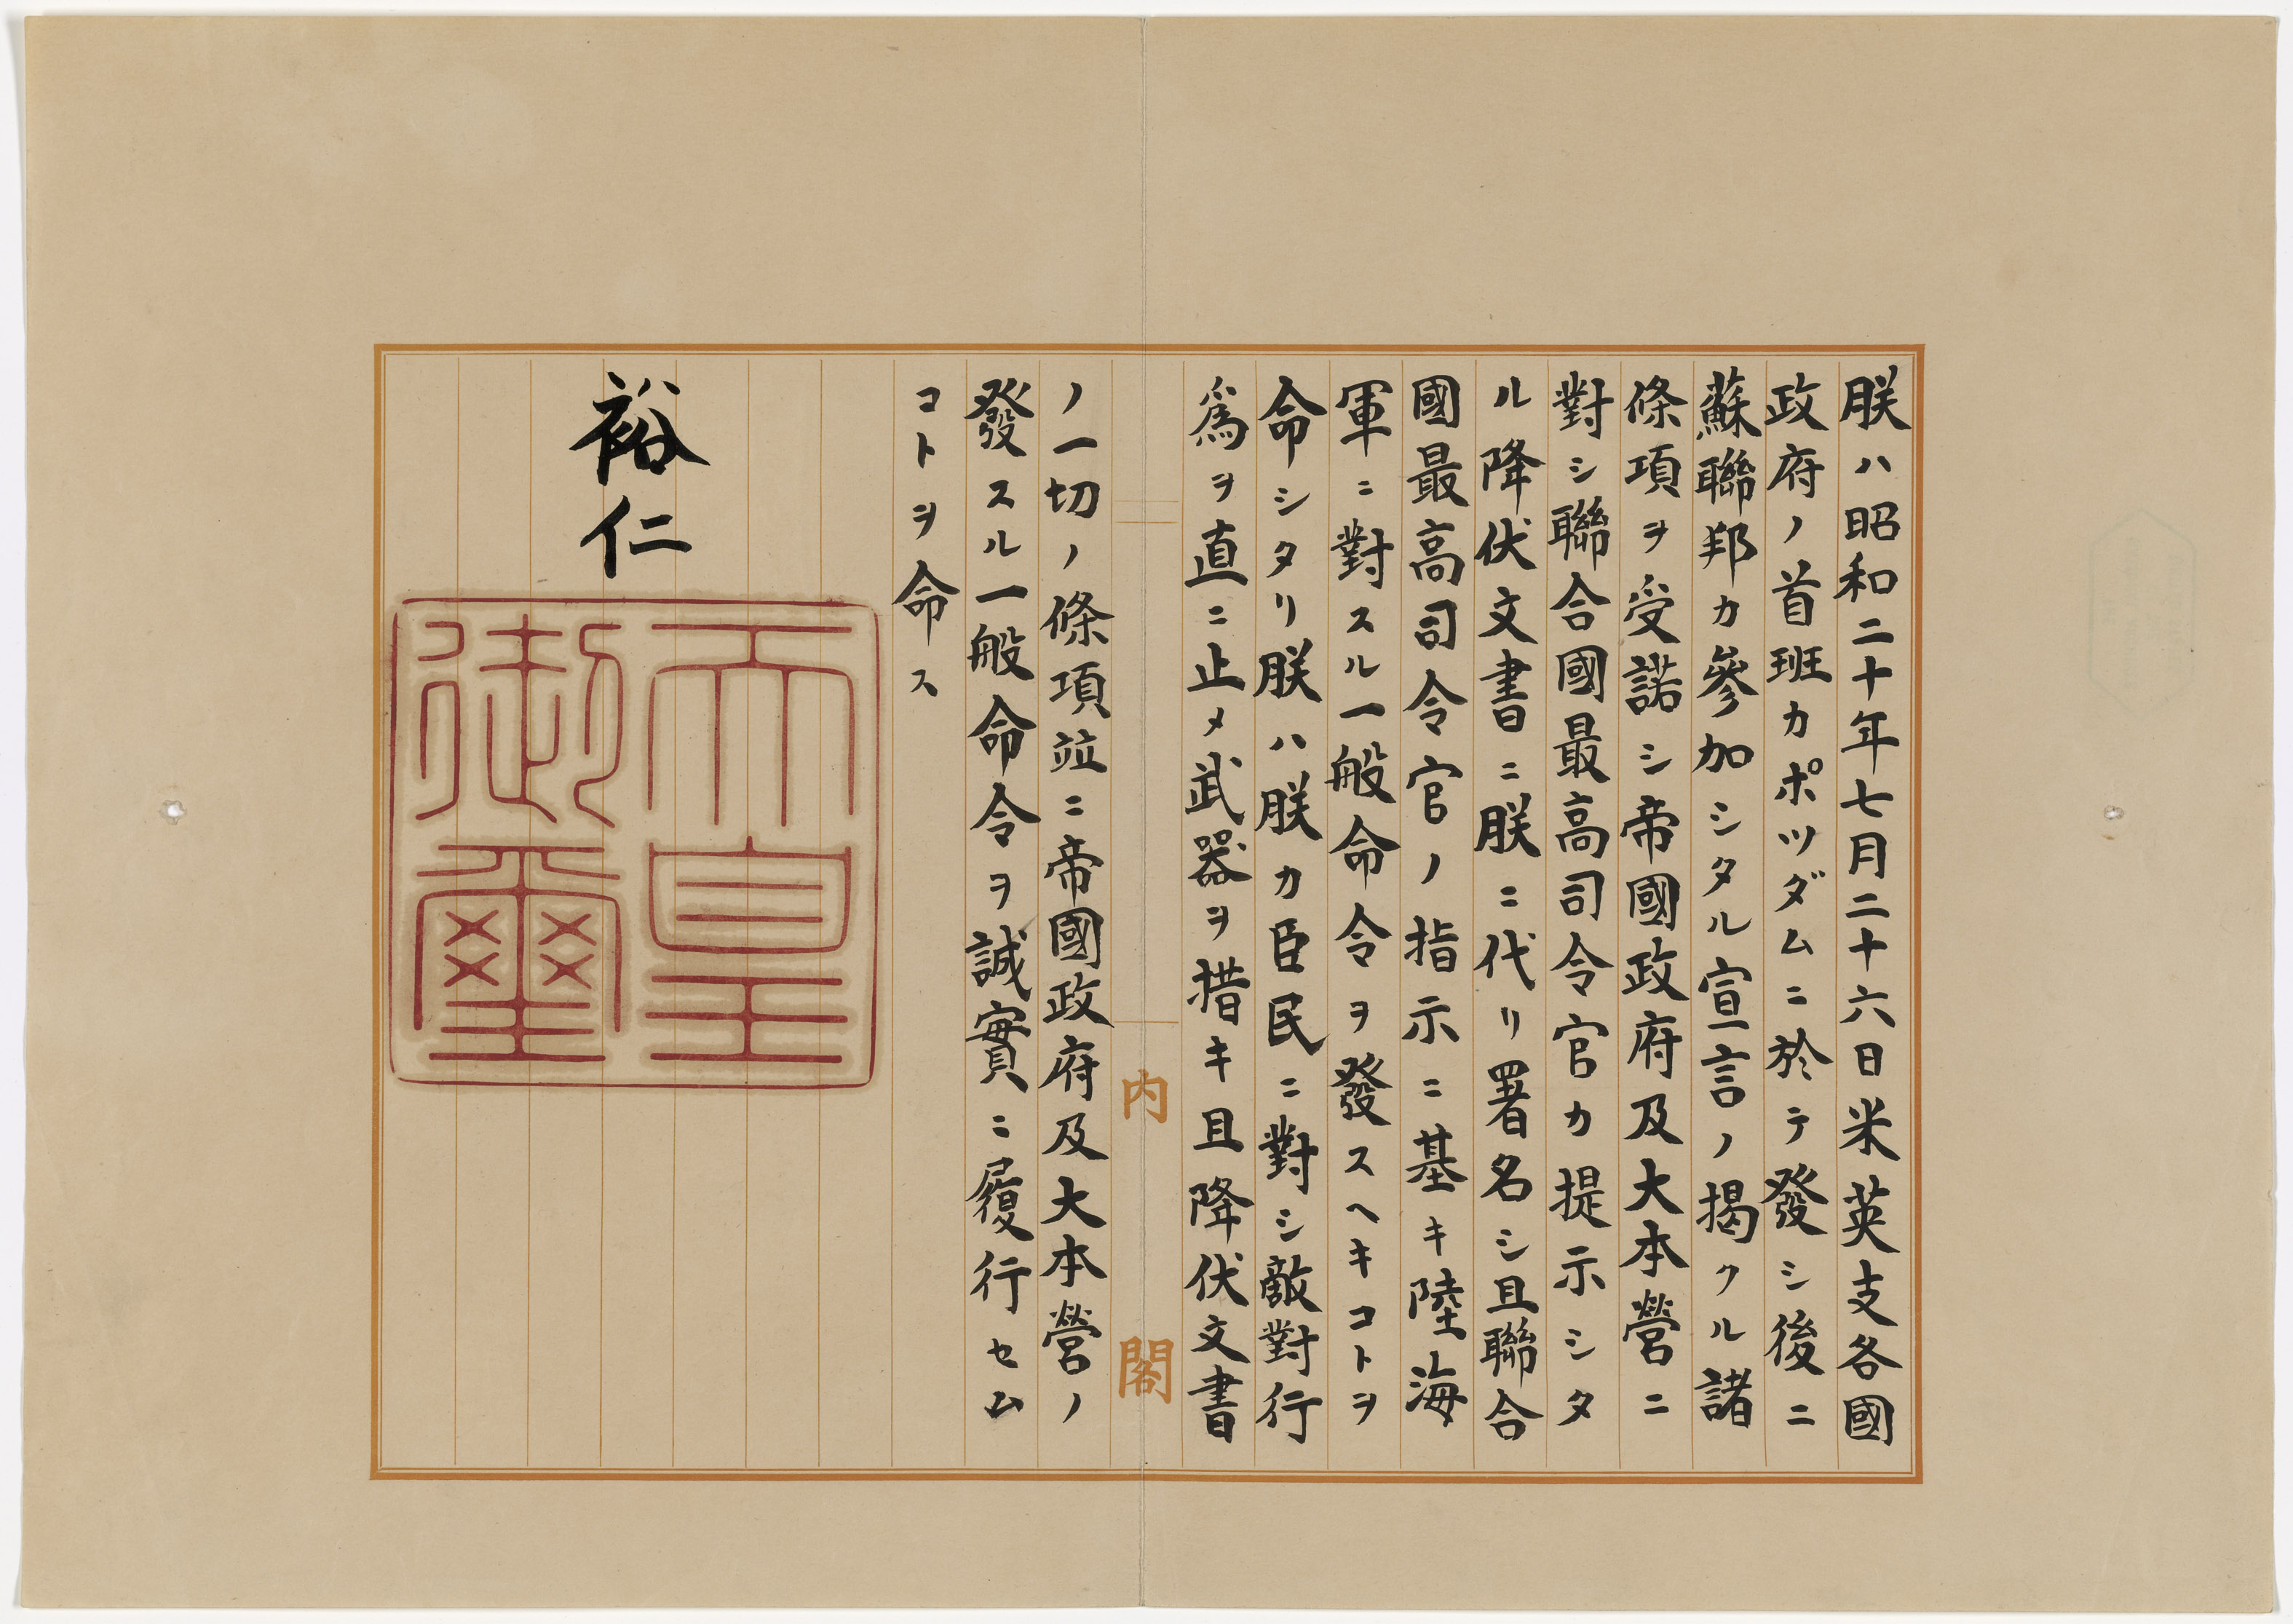 Imperial Japanese Rescript, September 2, 1945